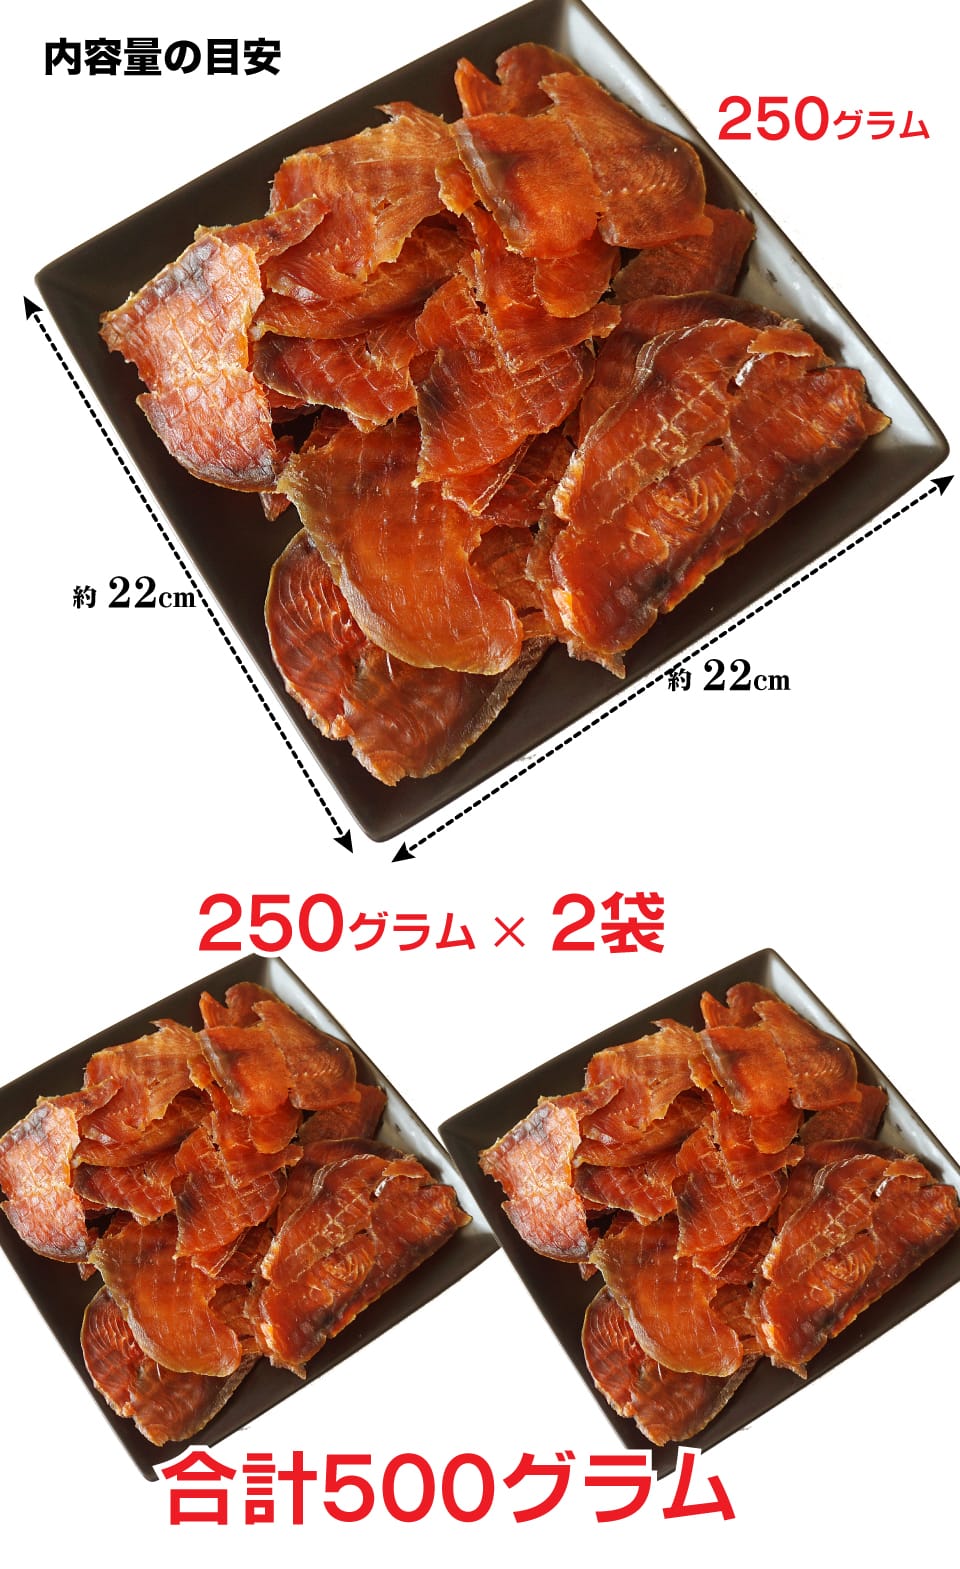 珍味 おつまみ 鮭とばイチロー 250g×2袋 北海道産 鮭 薄い スライス